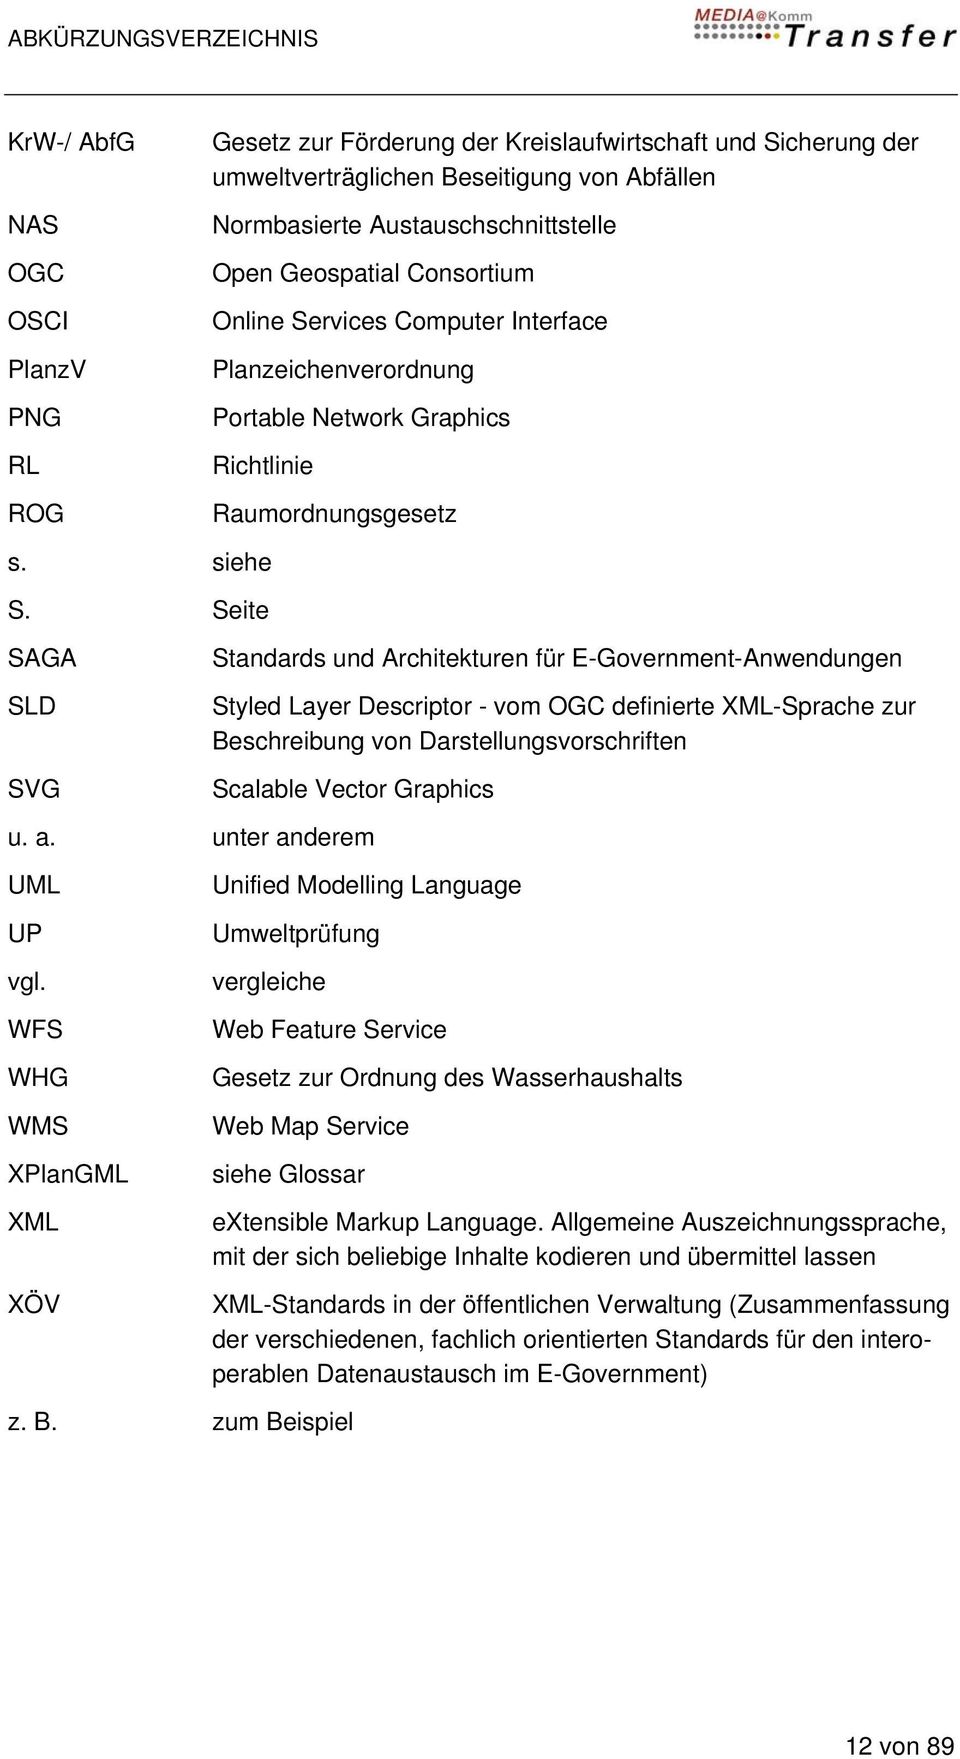 Seite SAGA SLD SVG Standards und Architekturen für E-Government-Anwendungen Styled Layer Descriptor - vom OGC definierte XML-Sprache zur Beschreibung von Darstellungsvorschriften Scalable Vector